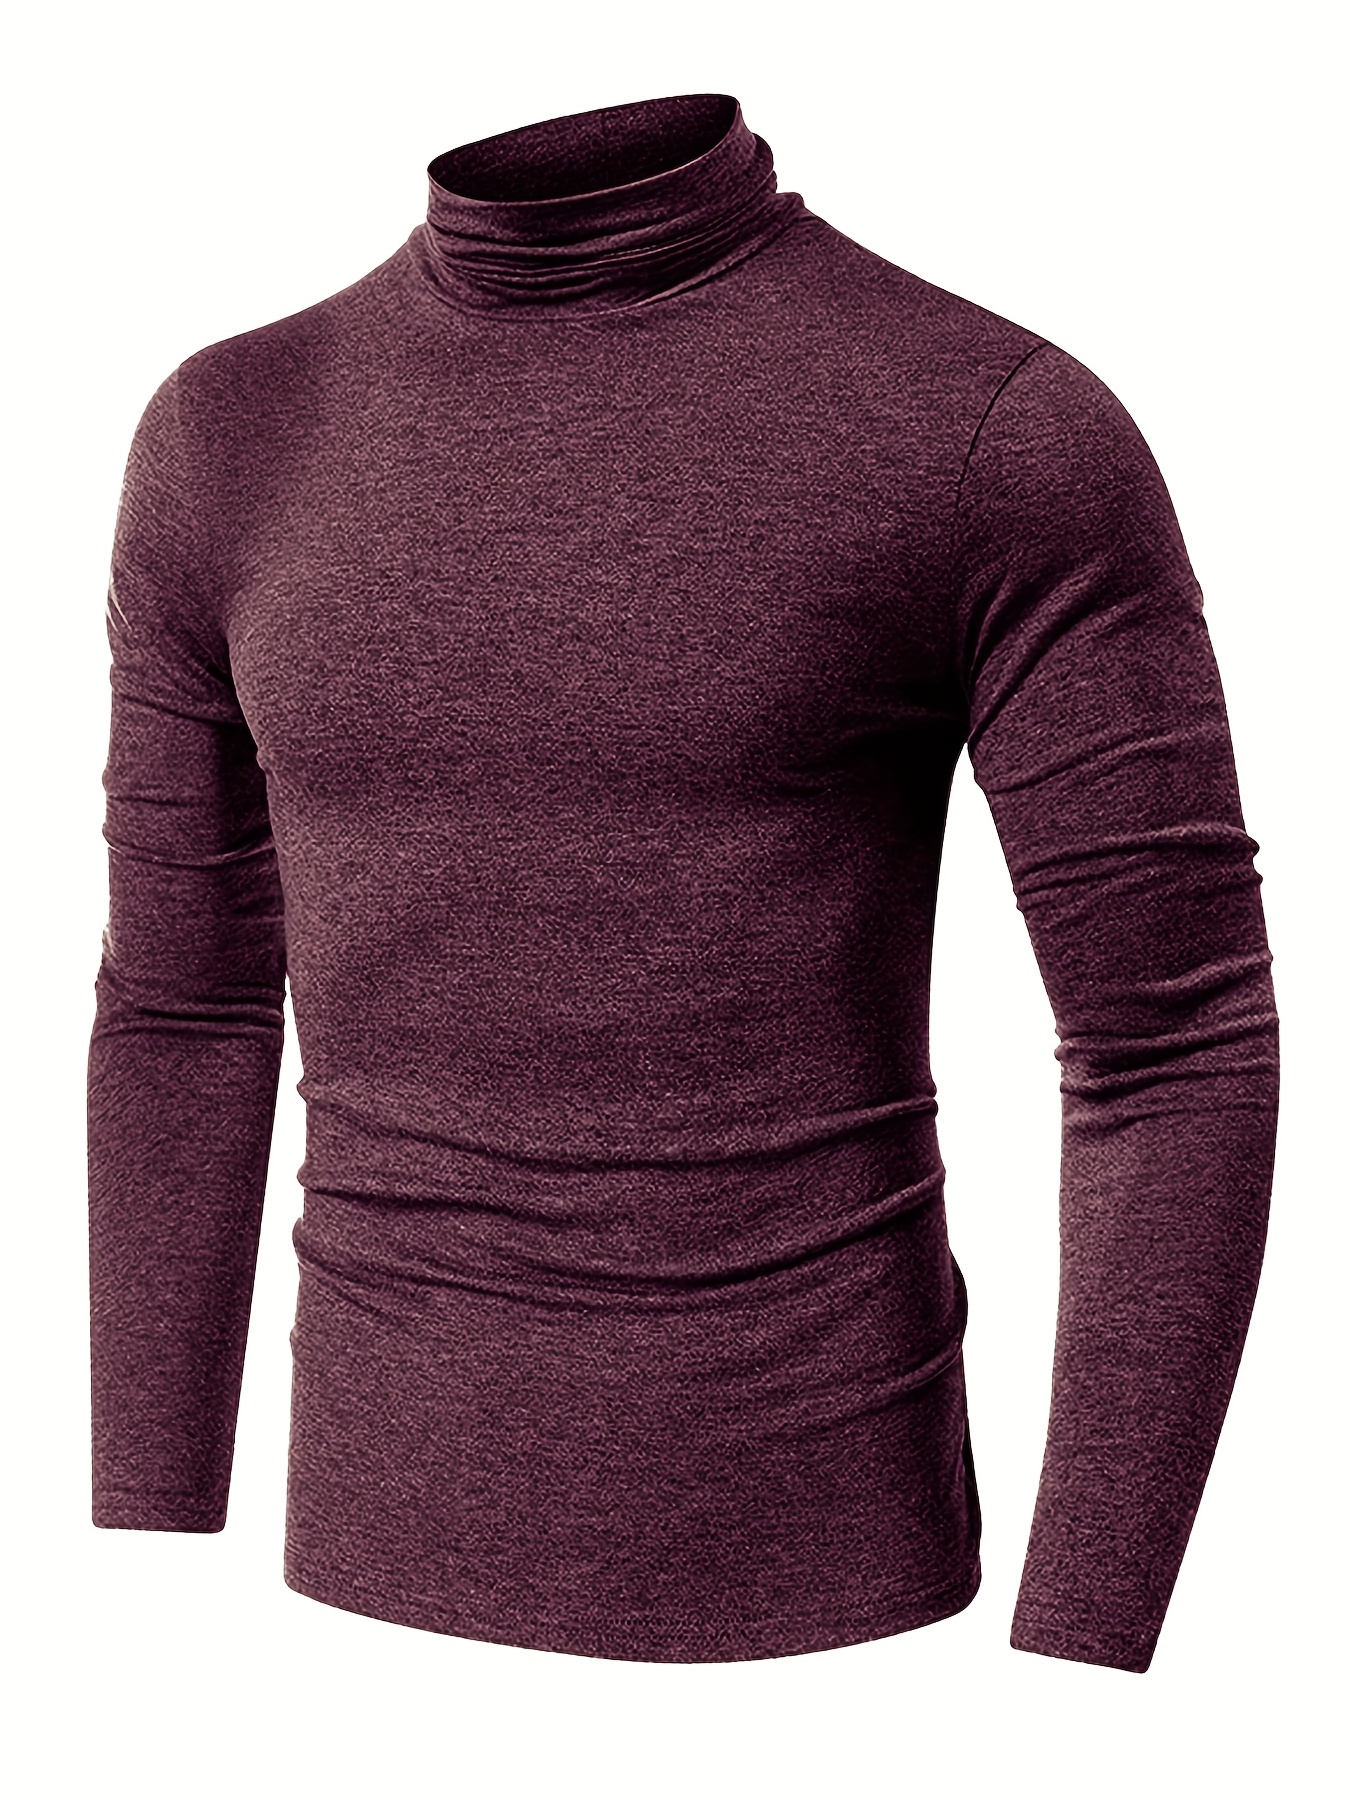 Camiseta de lana merino de manga larga con cuello alto para hombre -   México